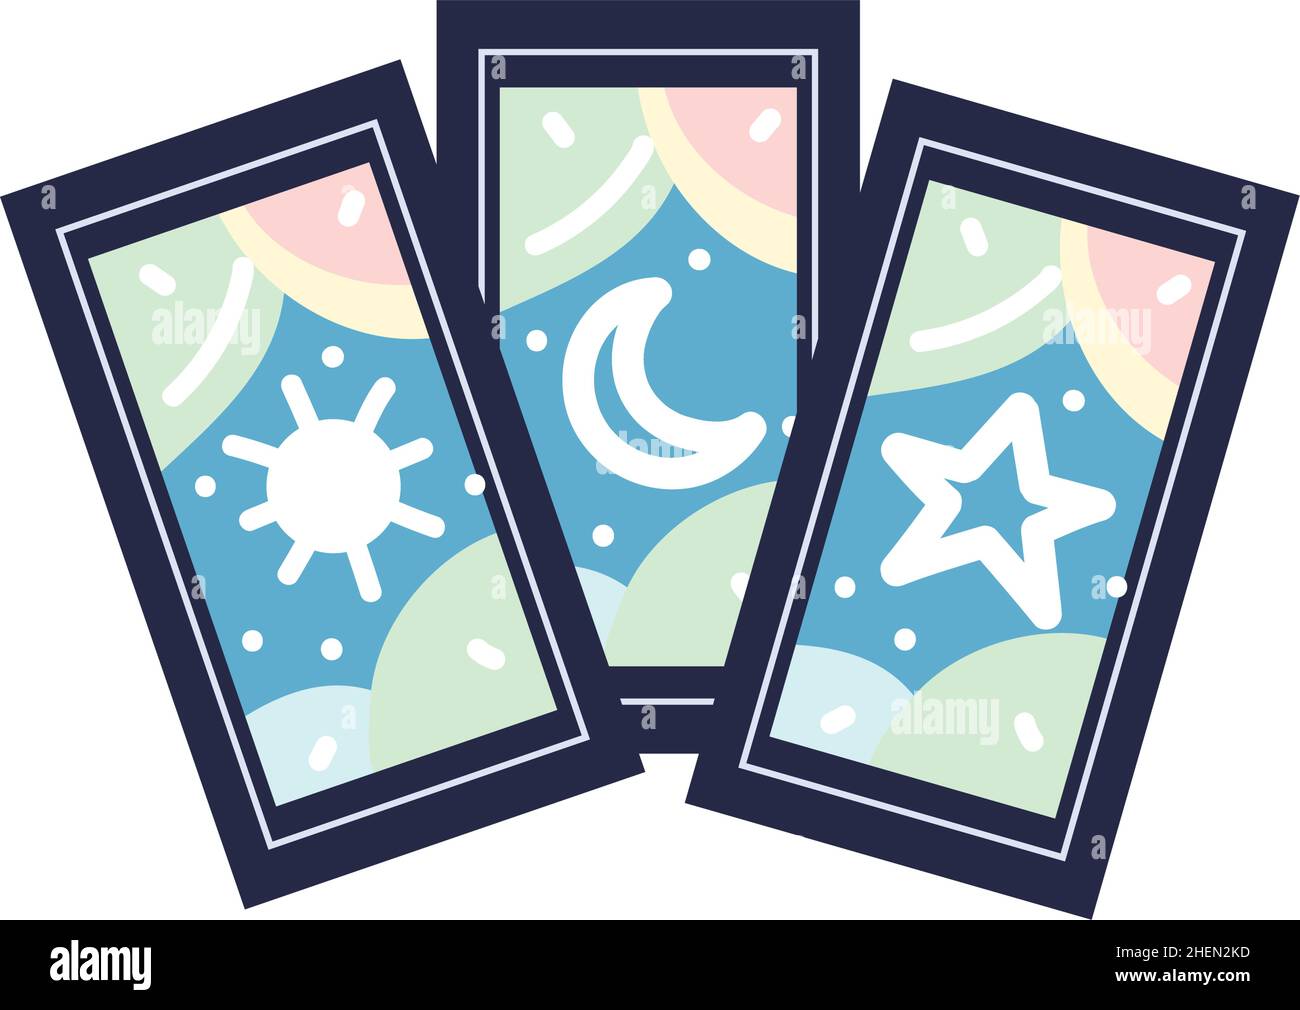 tarot cards icon Stock Vector